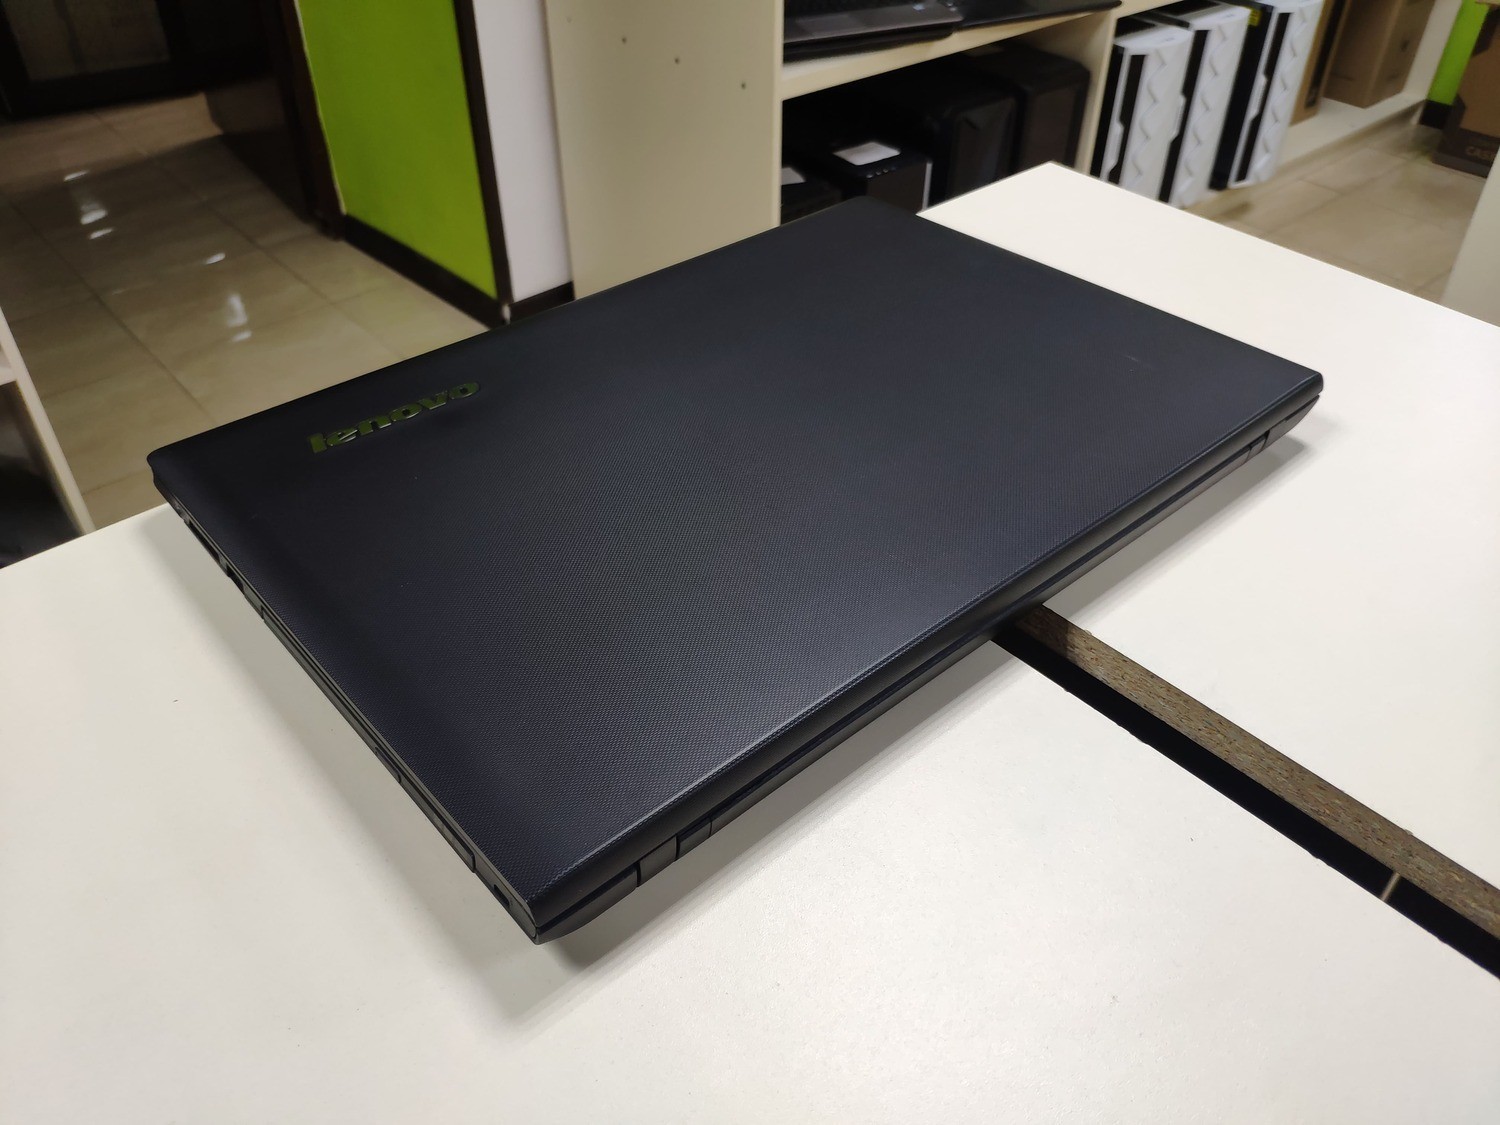 Купить Ноутбук Lenovo G505s В Харькове